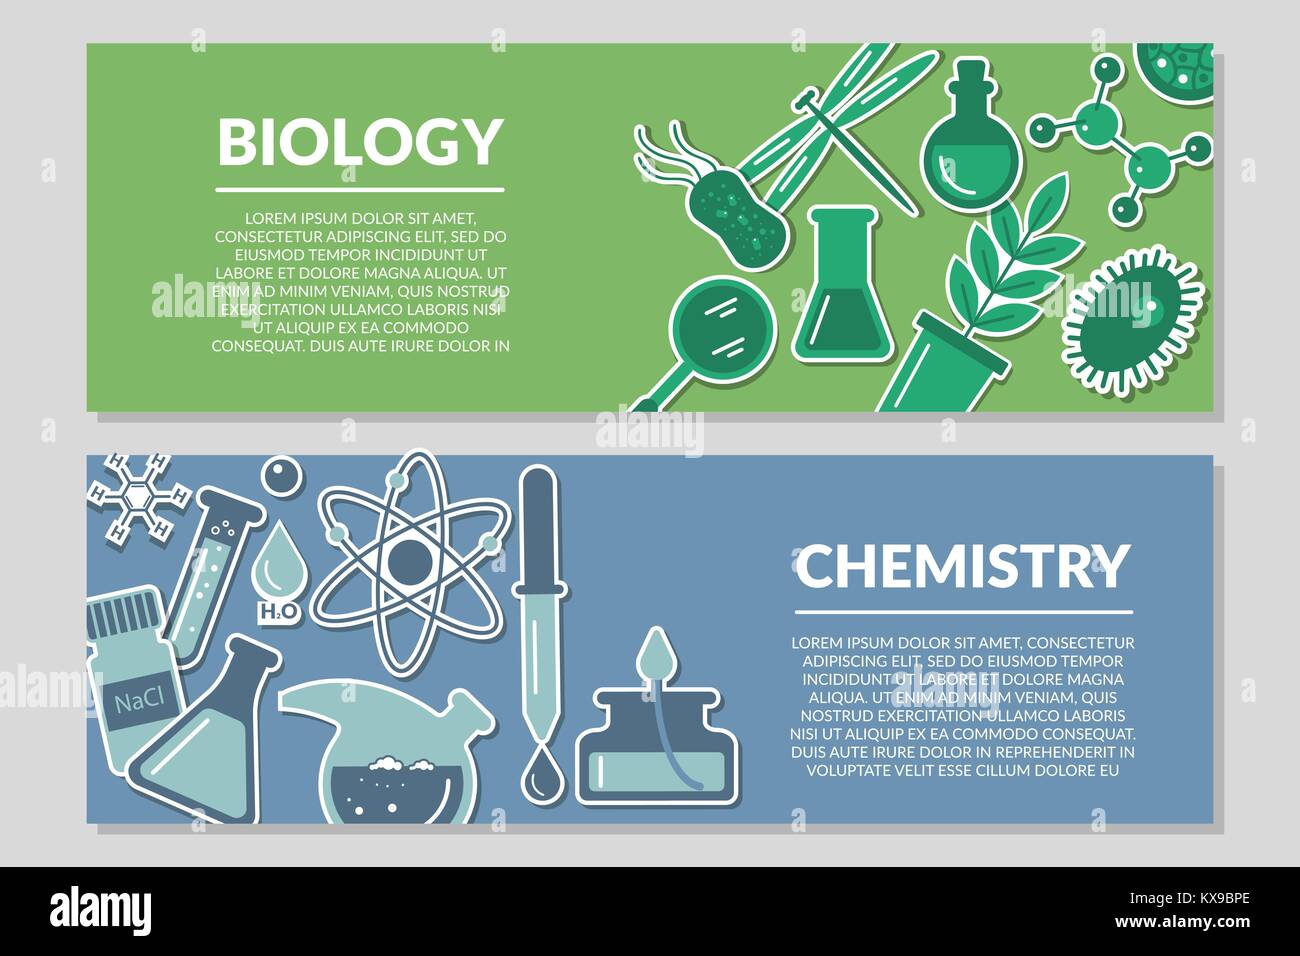 Banner auf das Thema der Biologie und Chemie Stock Vektor